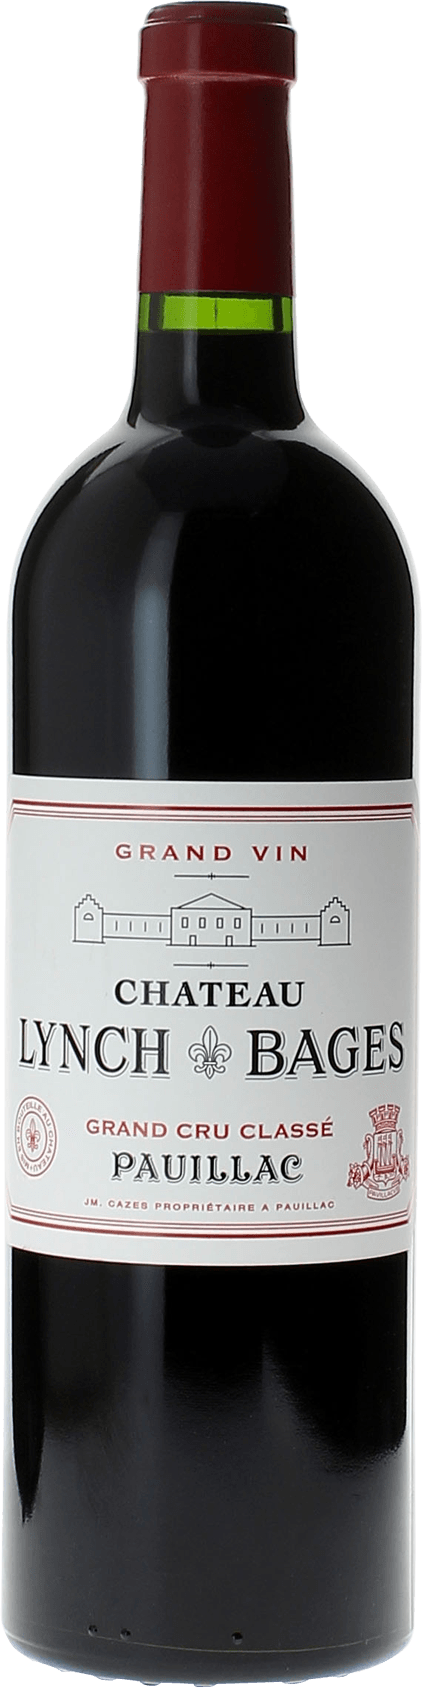 Lynch bages 2005 5 me Grand cru class Pauillac, Bordeaux rouge